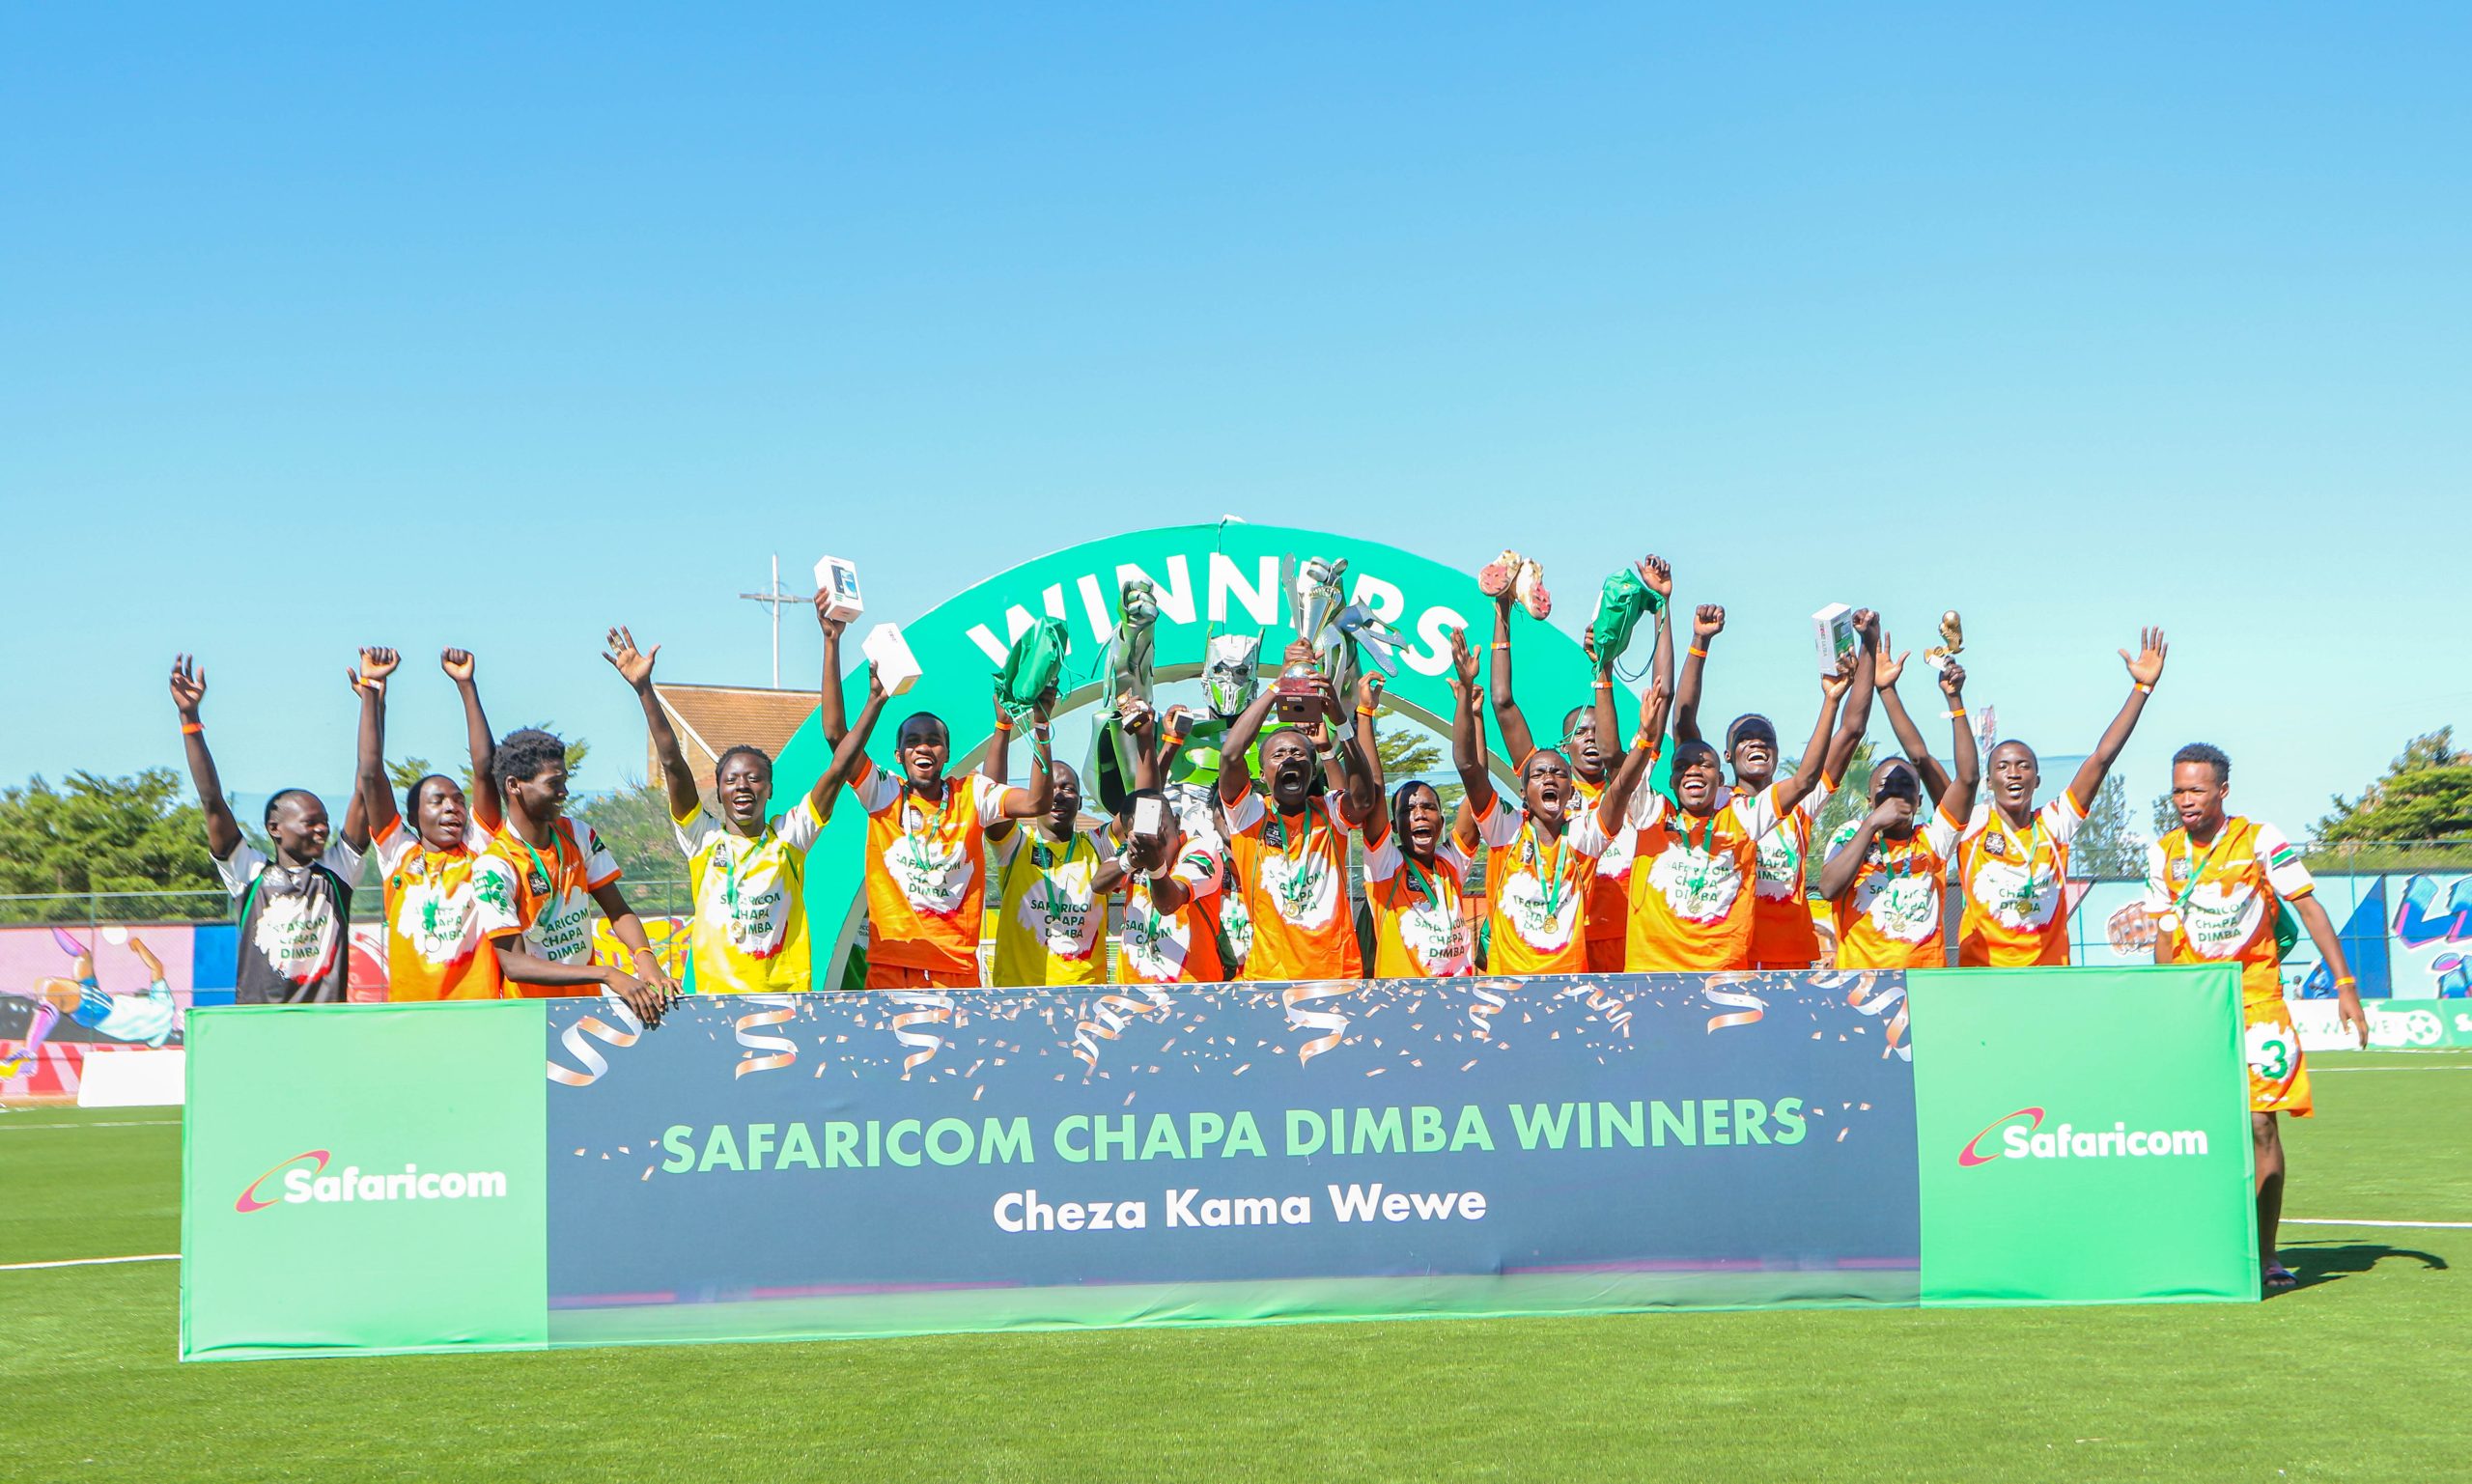 Young Kings and Dagoretti Mixed Girls’ Rule Safaricom Chapa Dimba in Nairobi